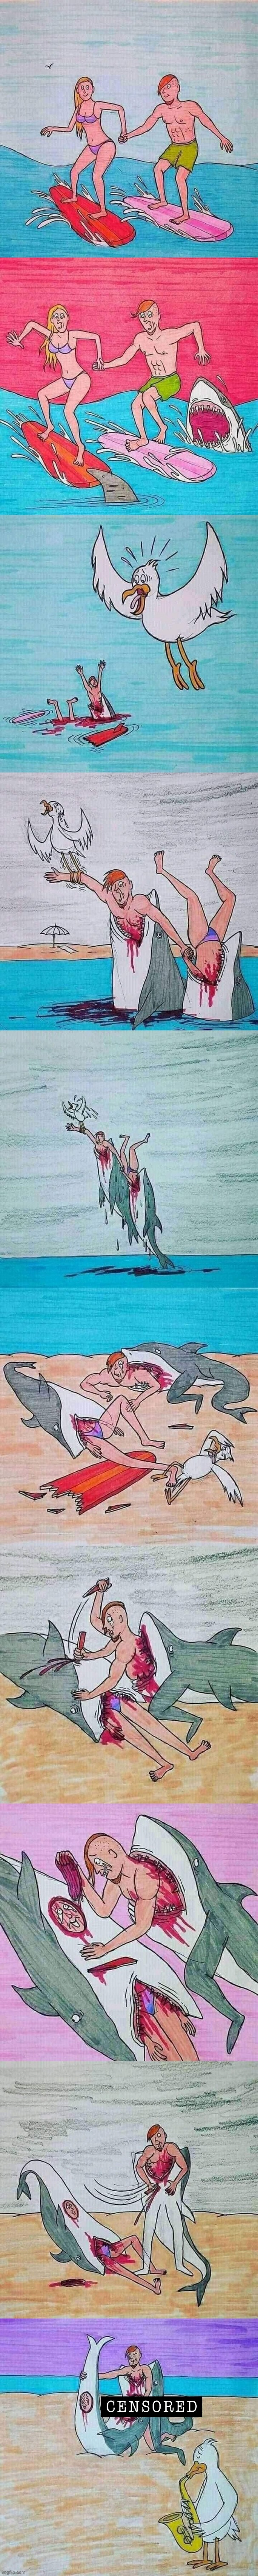 Shark attack love story full censored Blank Meme Template